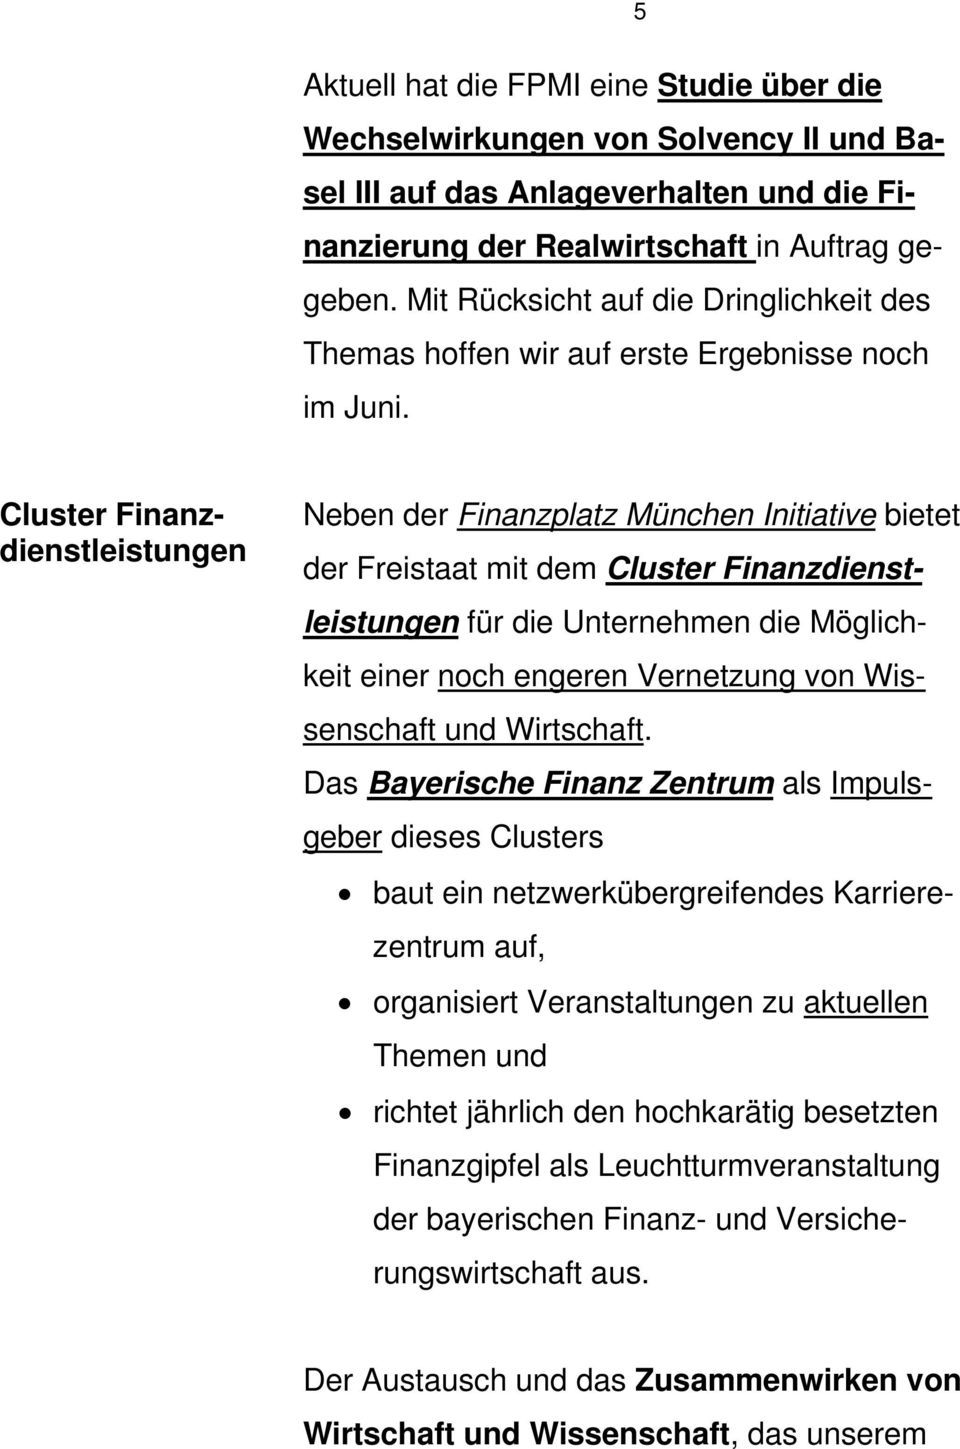 Cluster Finanzdienstleistungen Neben der Finanzplatz München Initiative bietet der Freistaat mit dem Cluster Finanzdienstleistungen für die Unternehmen die Möglichkeit einer noch engeren Vernetzung